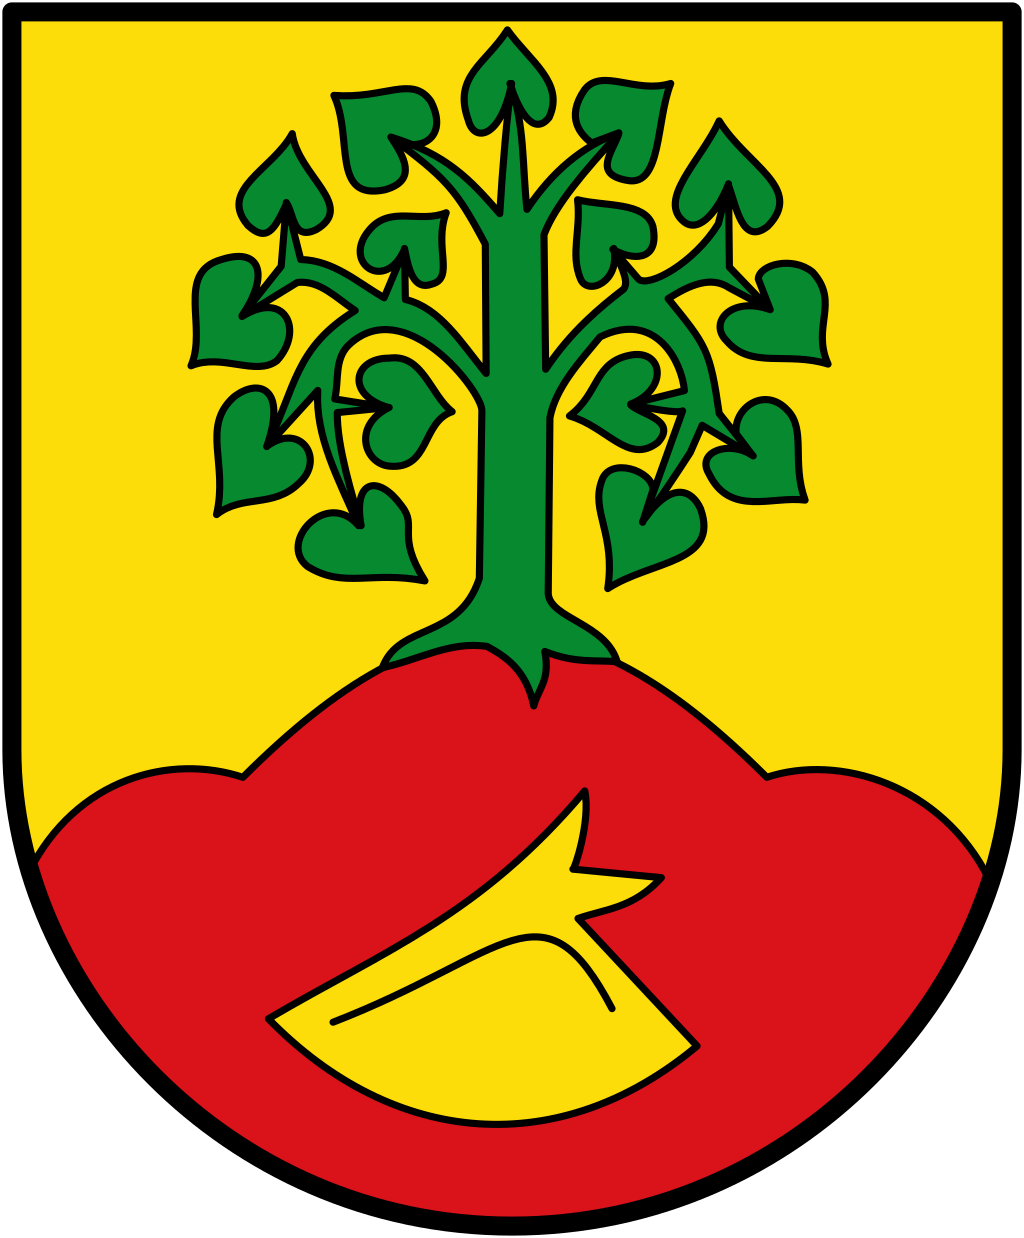 Altenberge